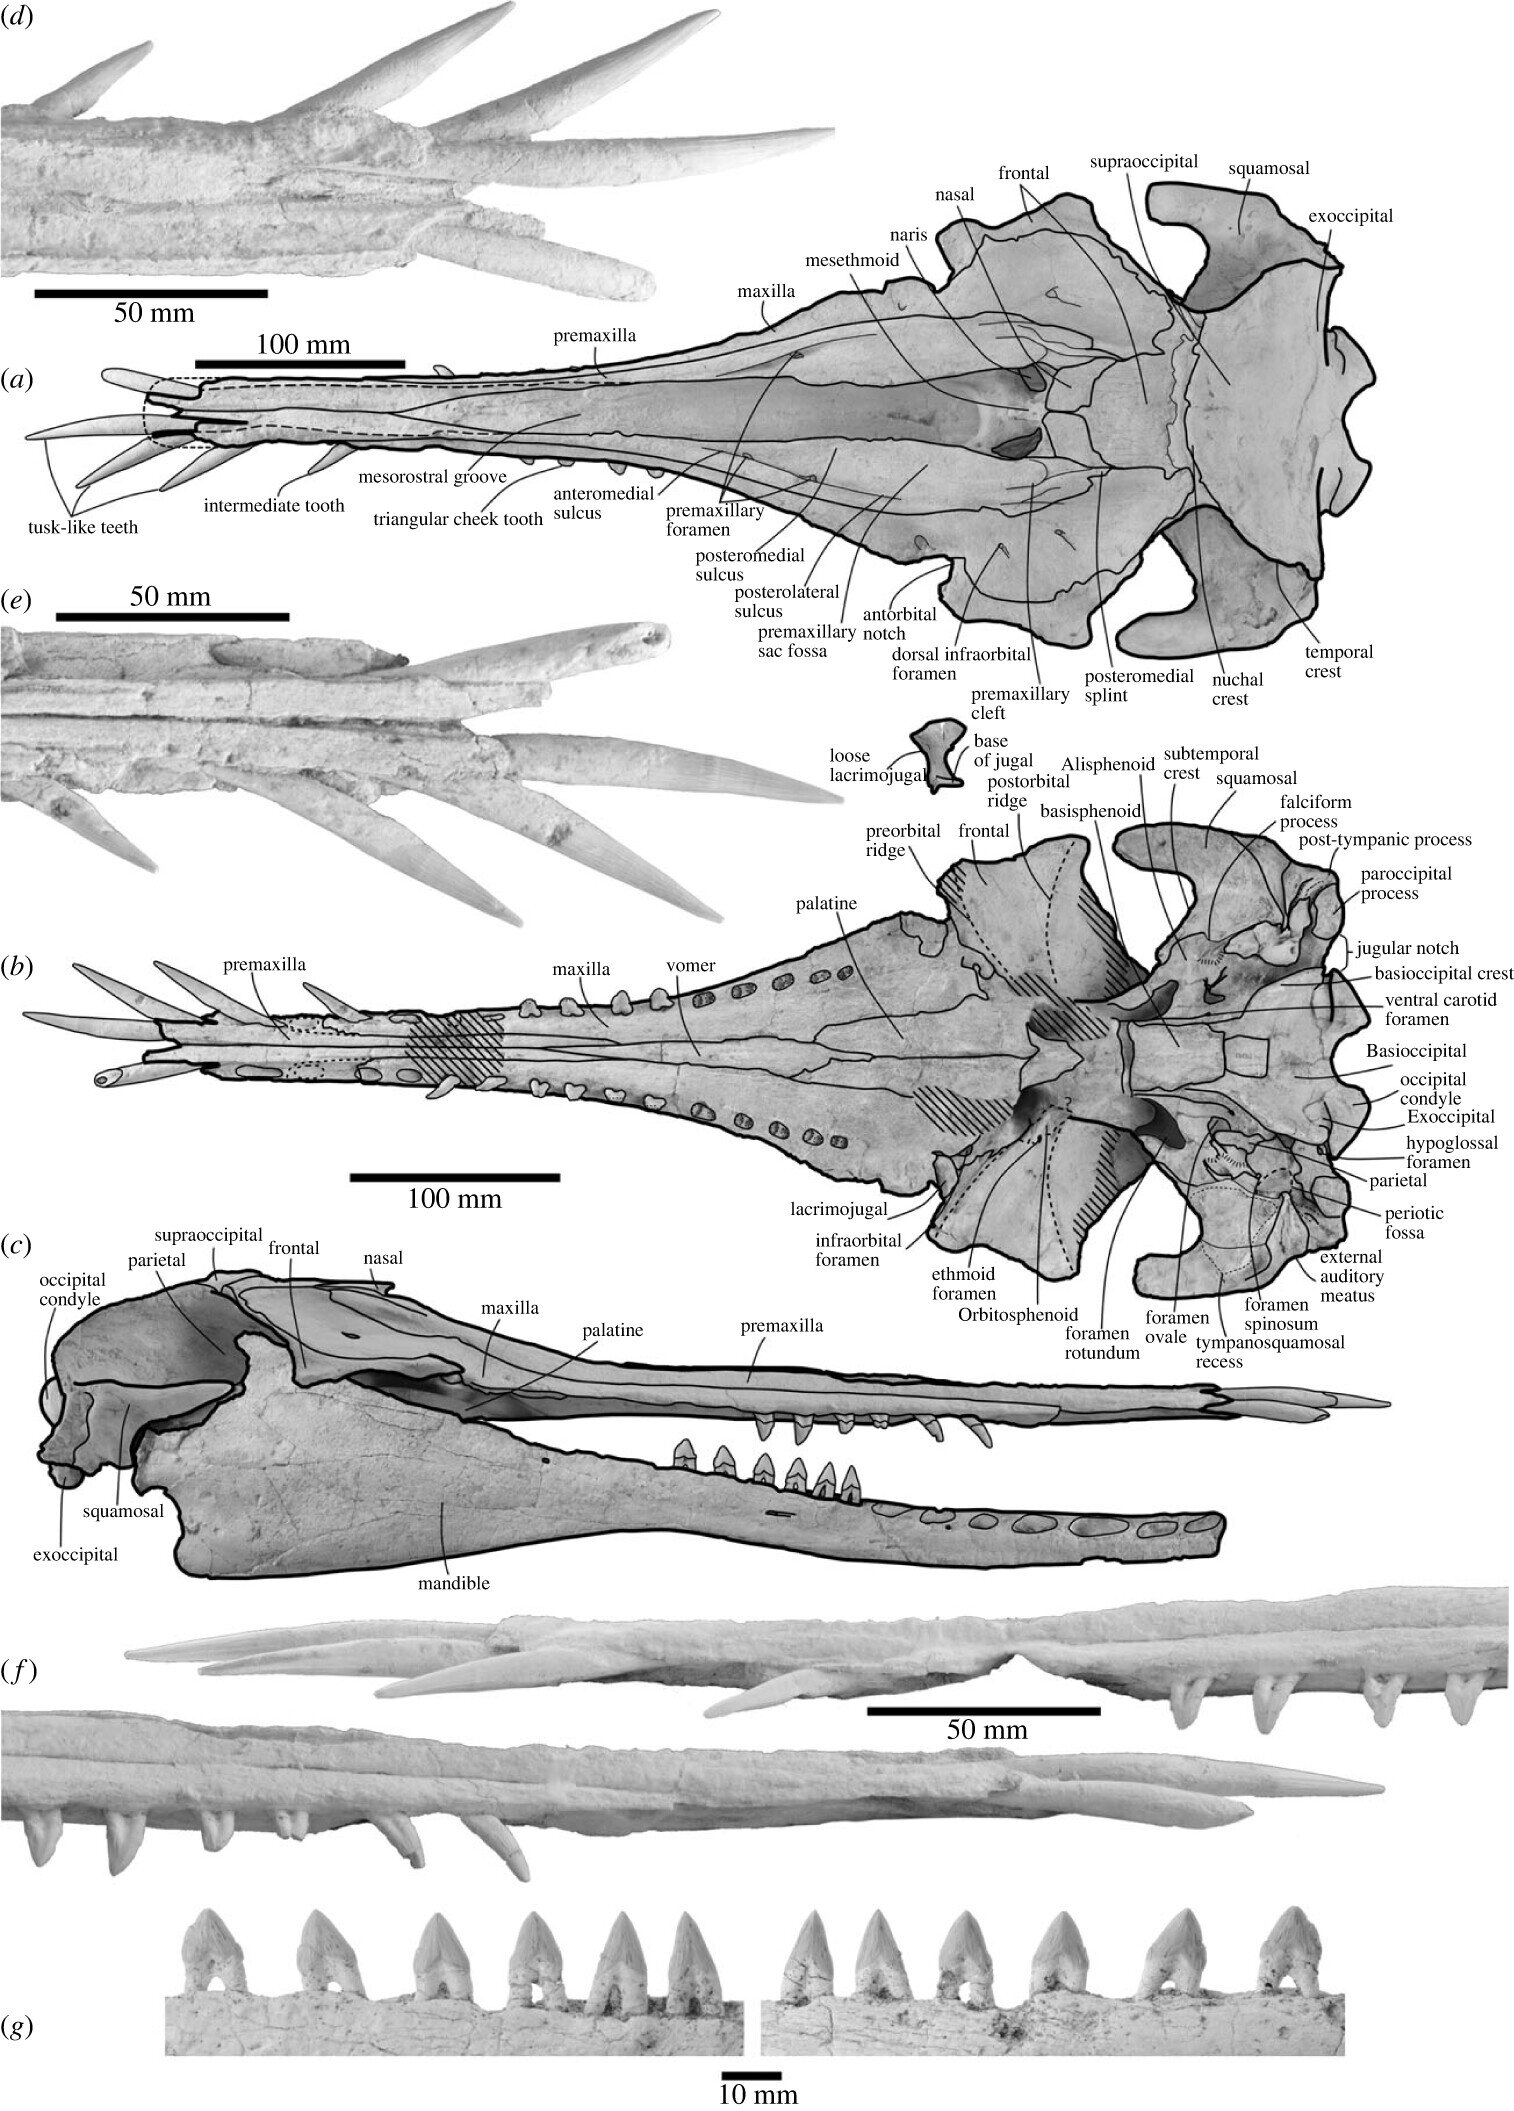 新西兰研究人员描述来自渐新世晚期长着象牙状牙齿的海豚新属种Nihohae matakoi